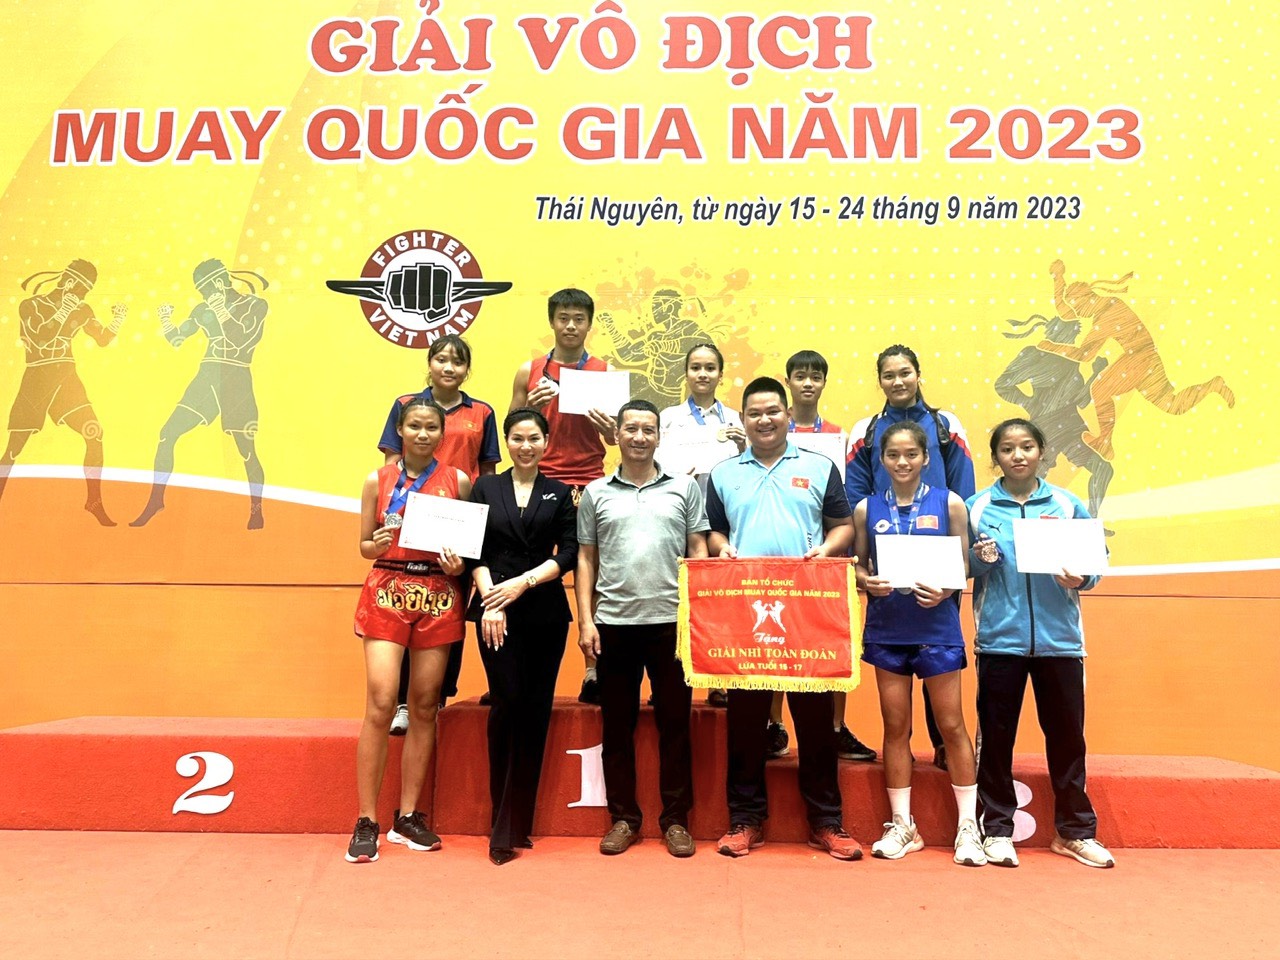 Nghệ An xếp thứ Nhì toàn đoàn lứa tuổi 15 - 17 giải Vô địch Muay quốc gia năm 2023